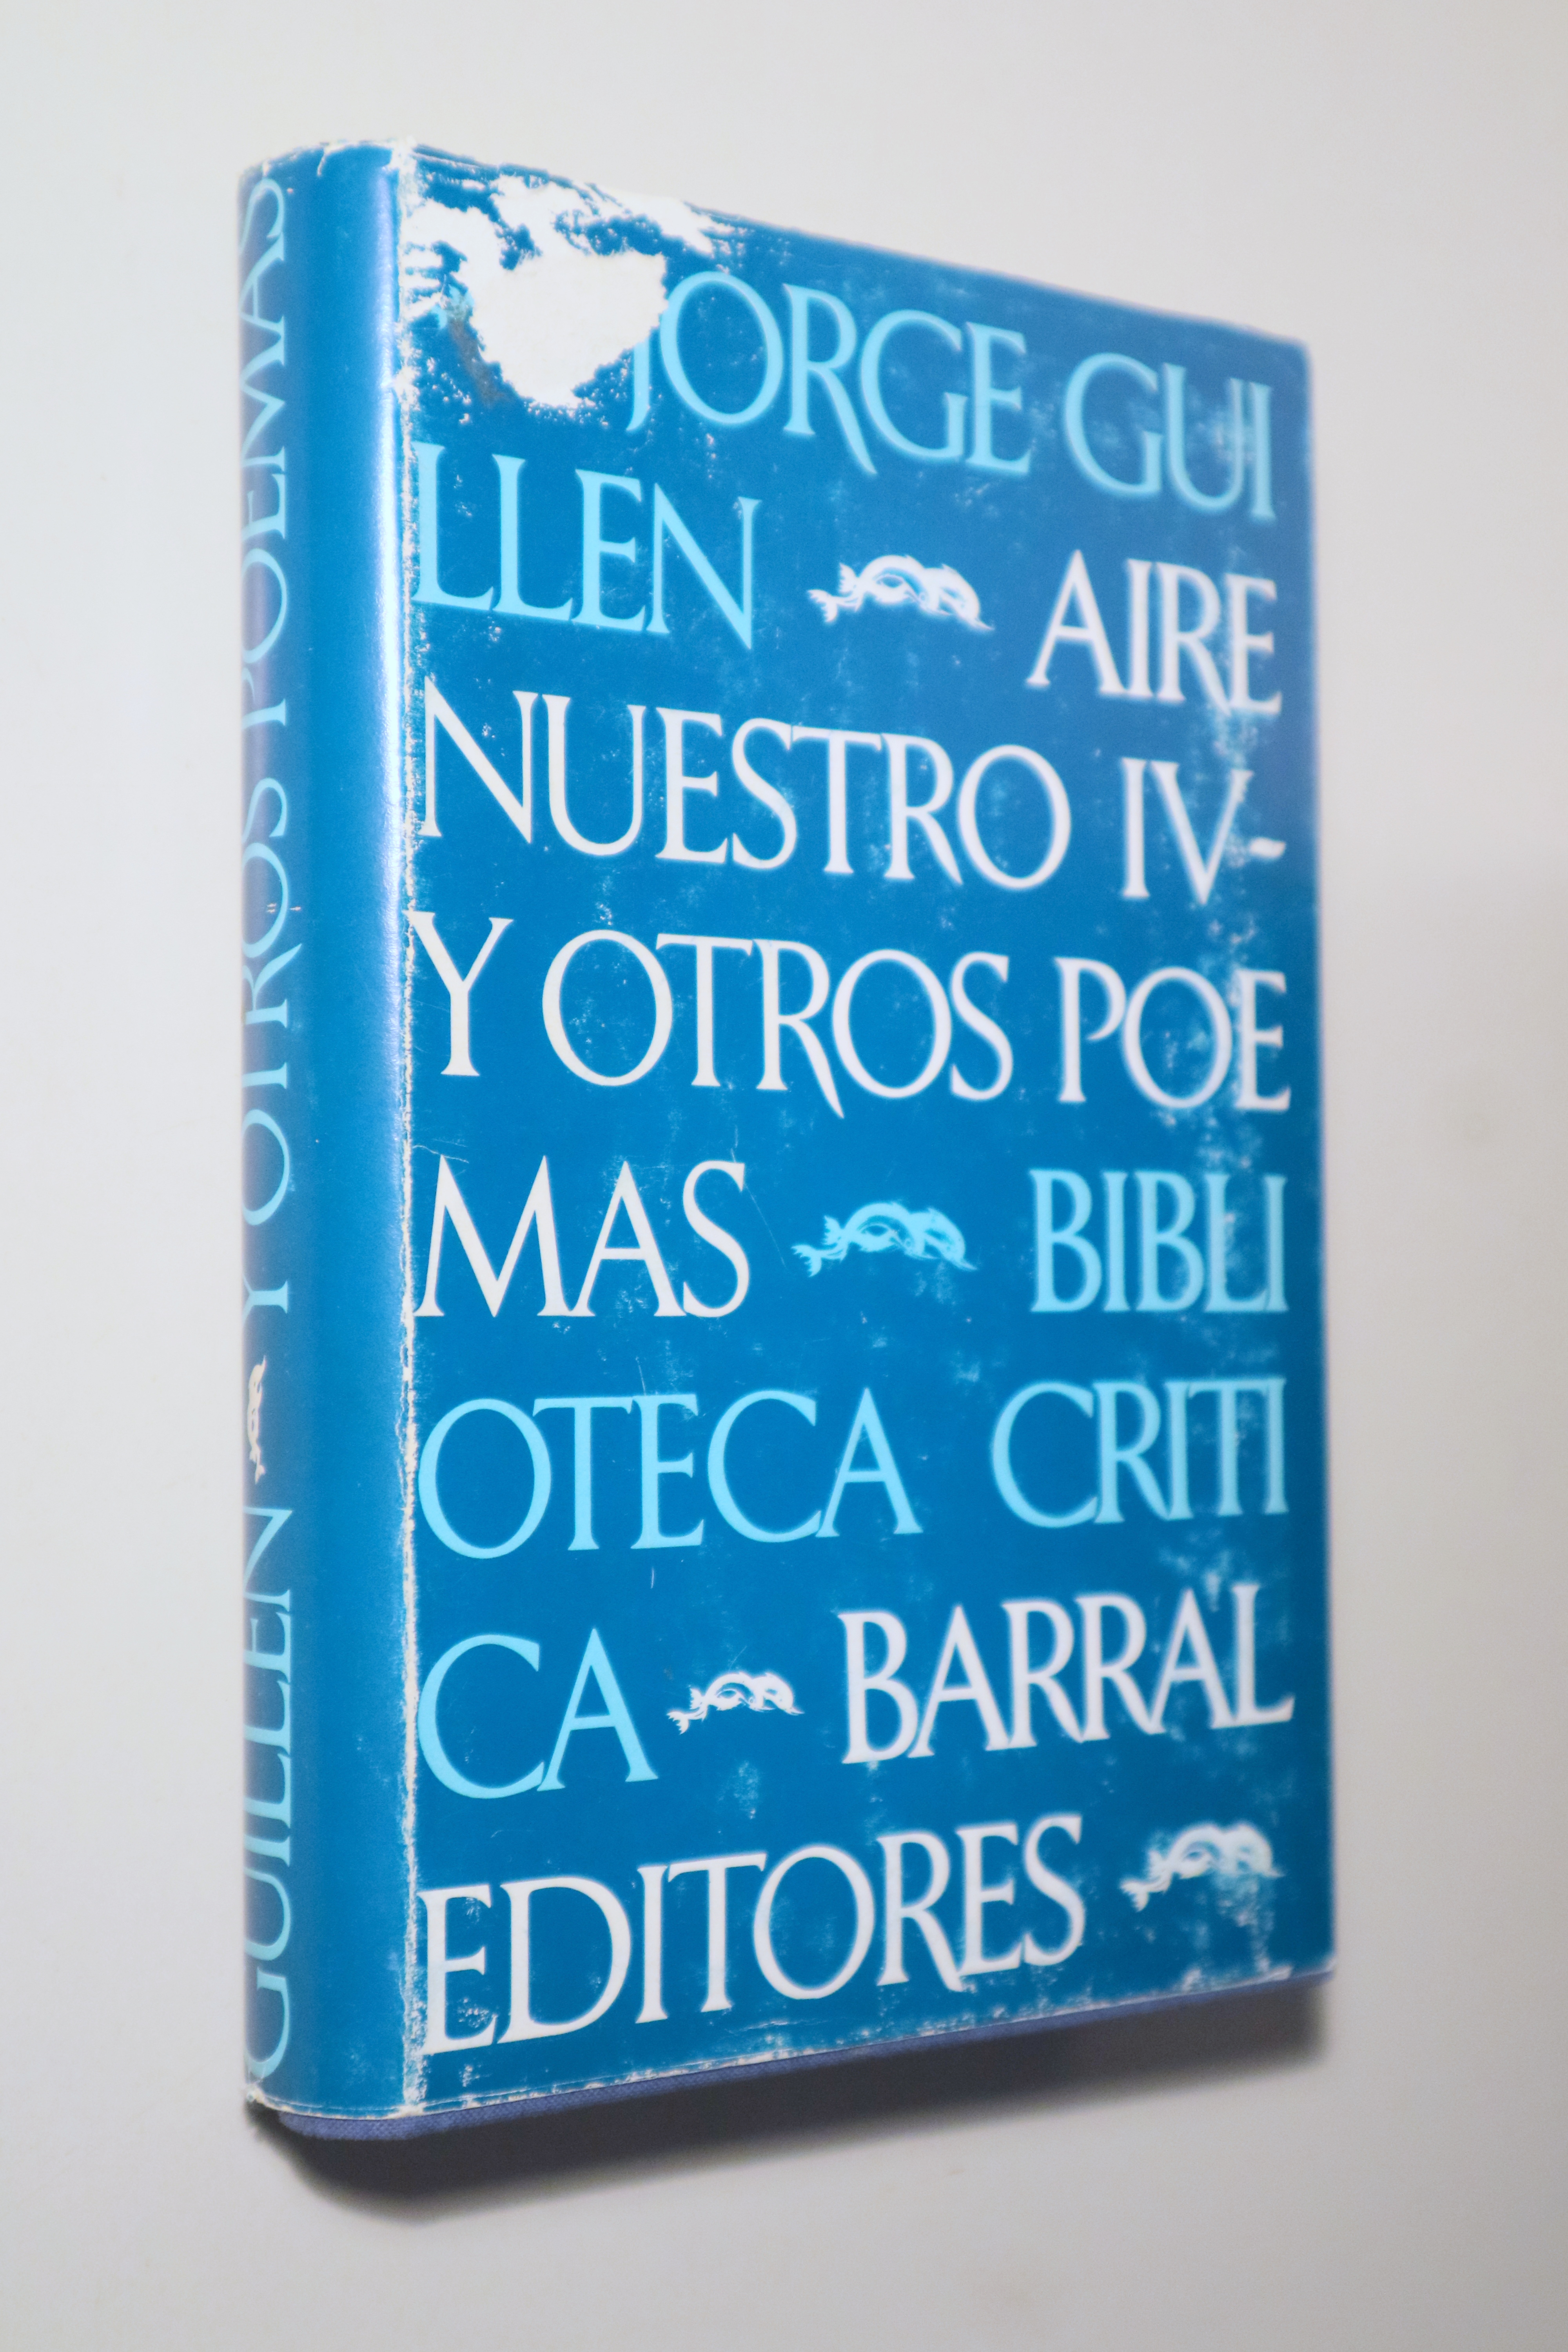 AIRE NUESTRO IV y otros poemas - Barcelona 1979 - 1ª edición completa